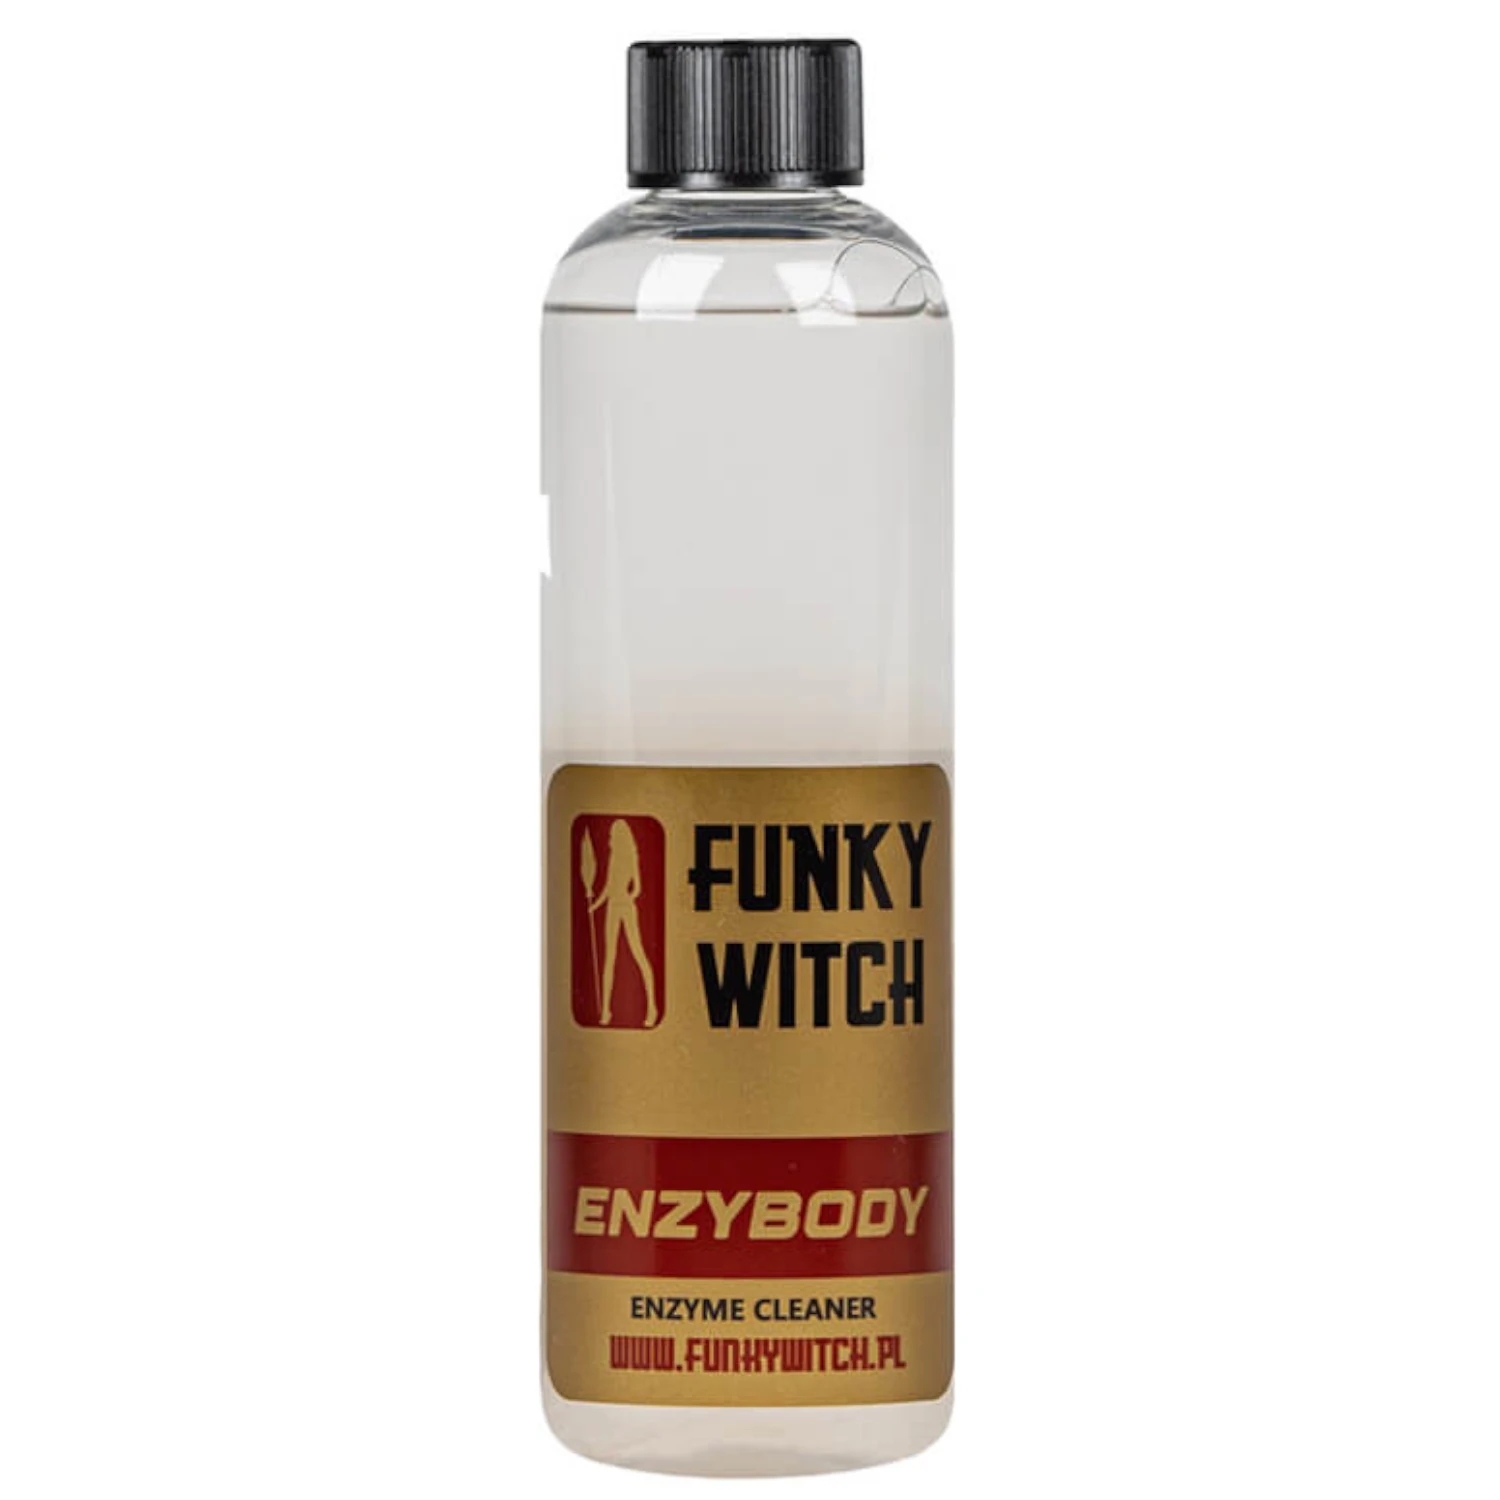 Image of FUNKY WITCH Enzybody Enzymatic Cleaner - środek do usuwania zabrudzeń organicznych 500ml